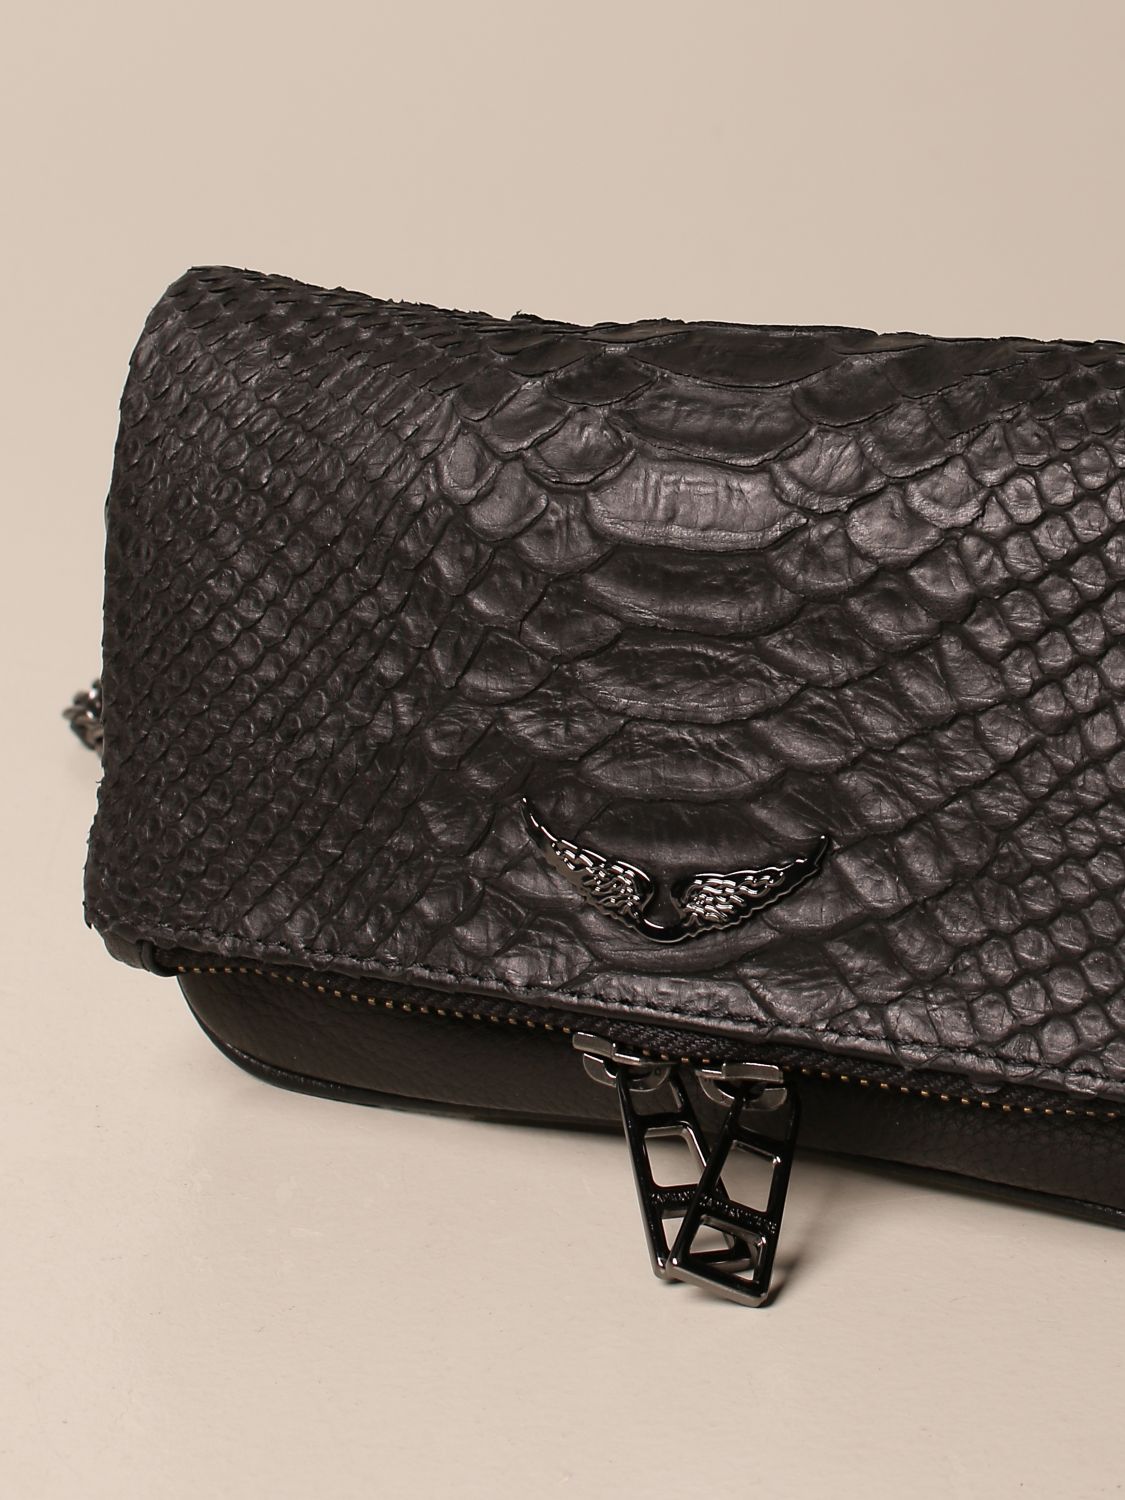 Zadig & Voltaire Crocodile Print One Bag Single Shoulder Bag for Women